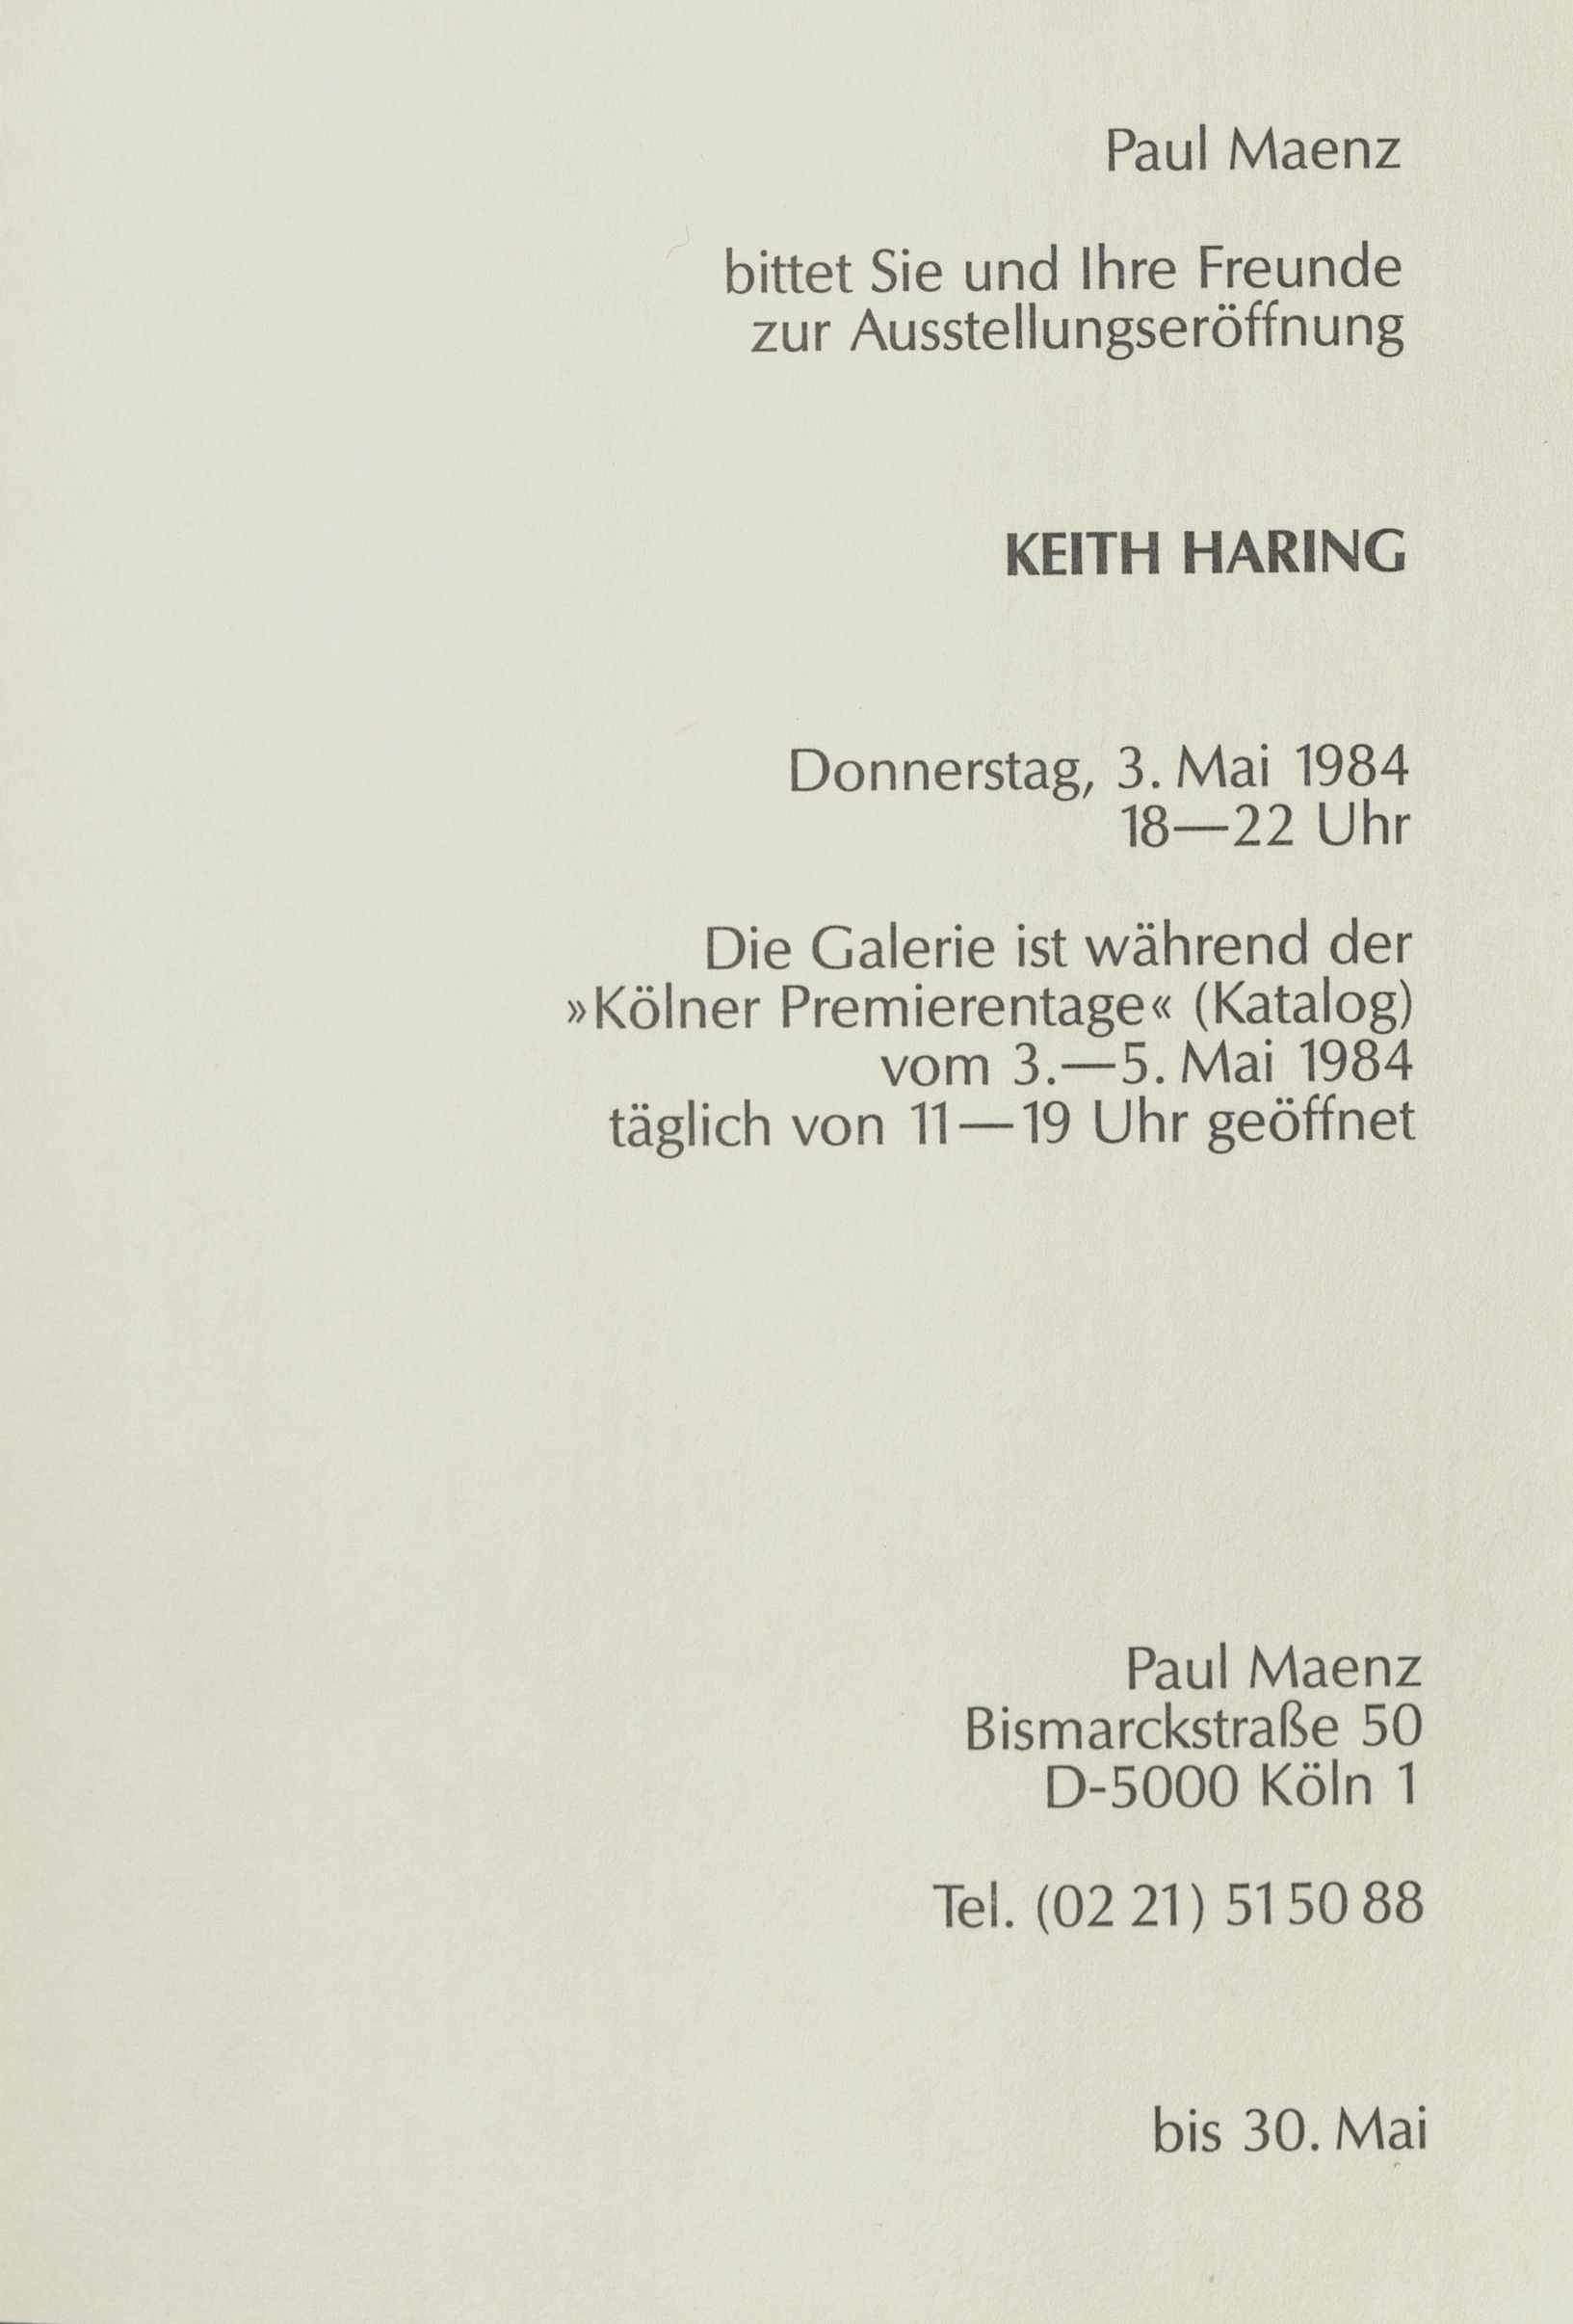 Keith Haring, Galerie Paul Maenz, Cologne 1984 (Invitation) © Keith Haring; Archiv der Avantgarden, Staatliche Kunstsammlungen Dresden